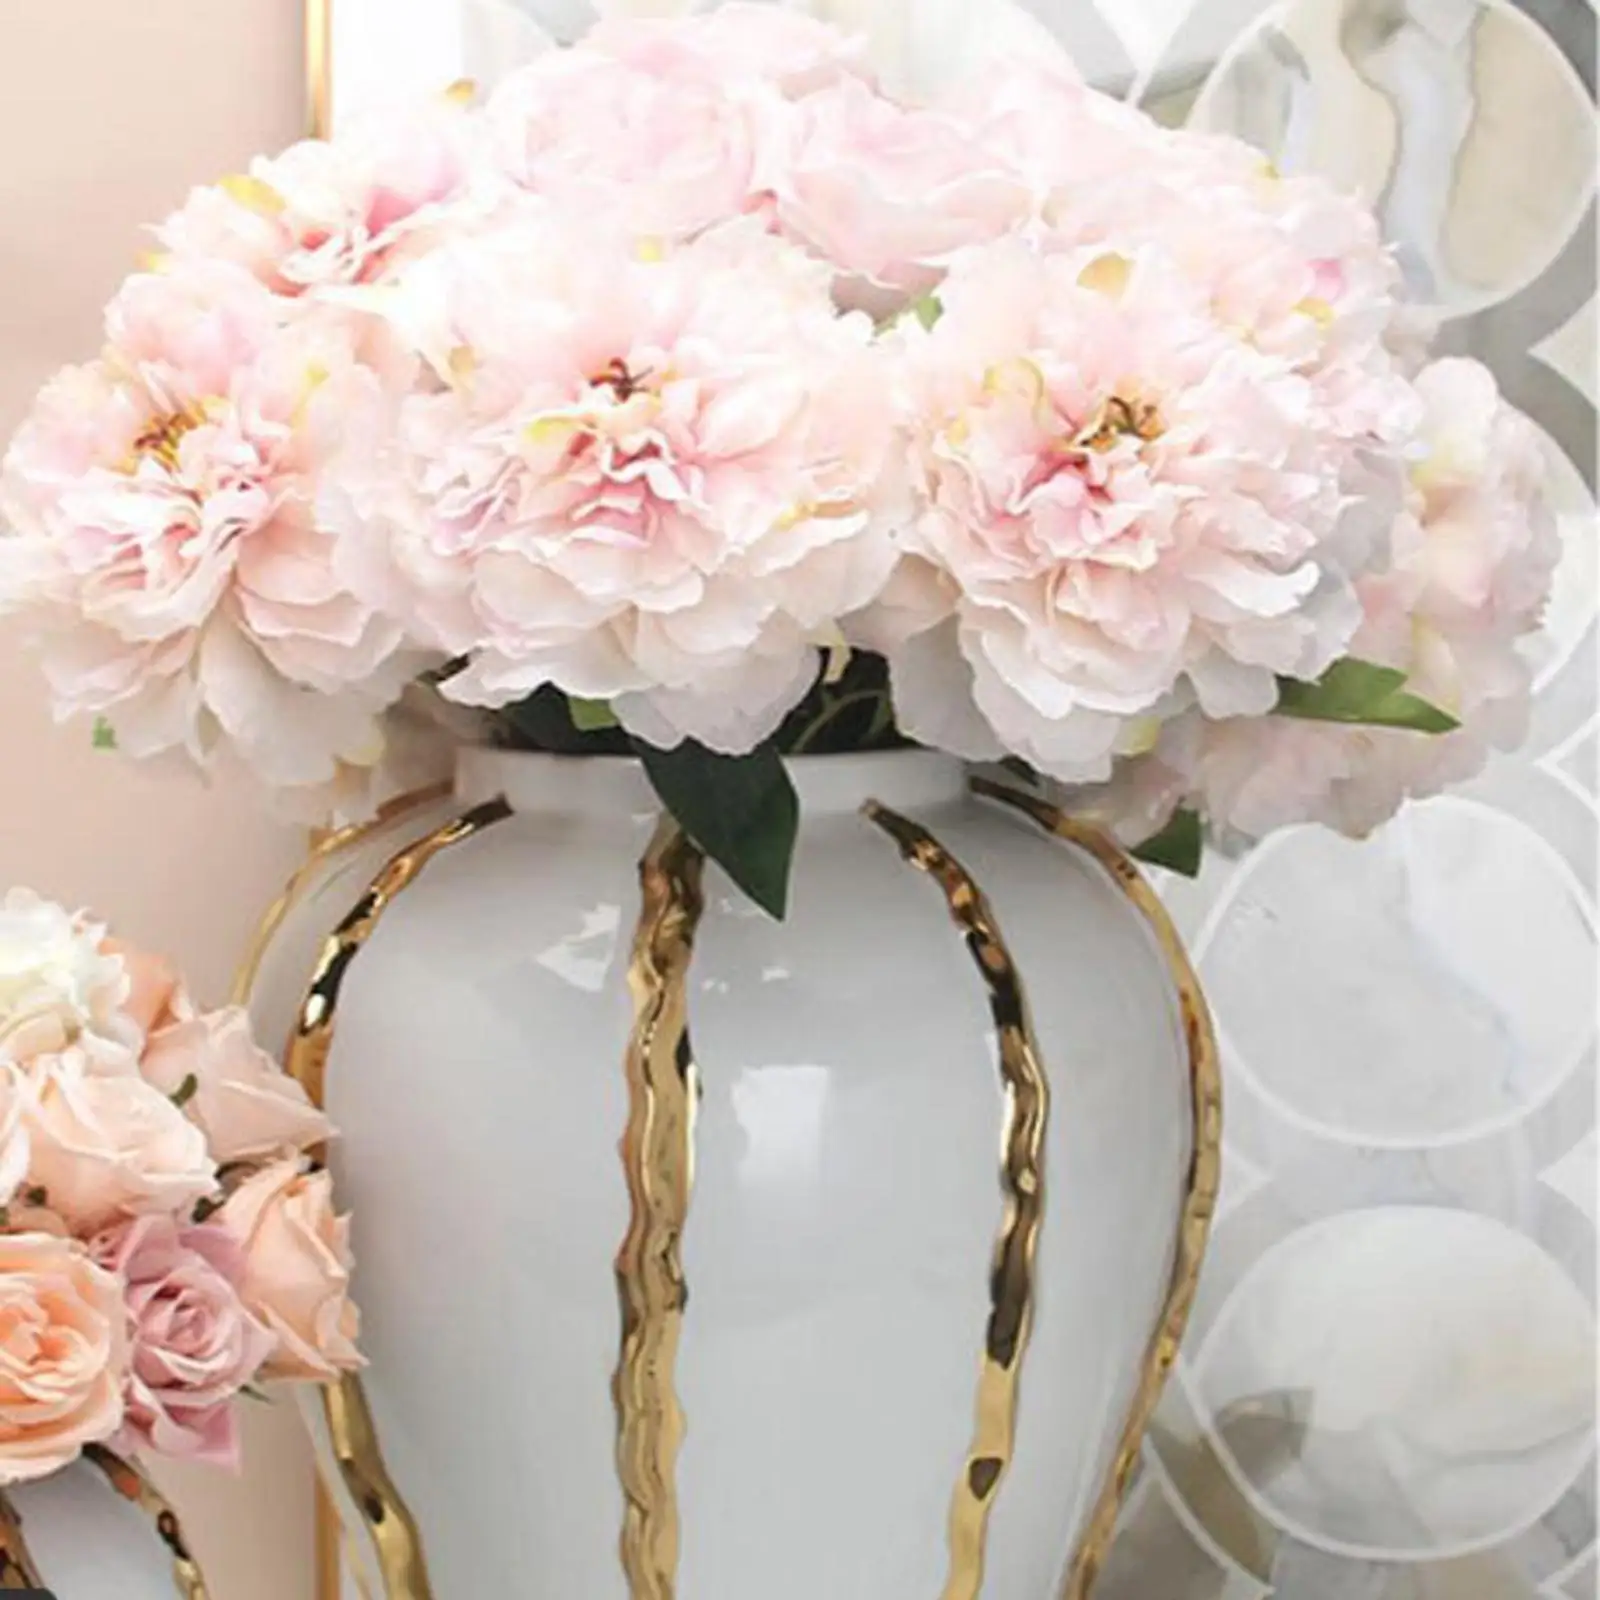 

Porcelain Ginger Jar Decorative Accessories Ceramic Glazed Ceramic Flower Vase for Bedroom Home Weddings Floral Arrangement Desk